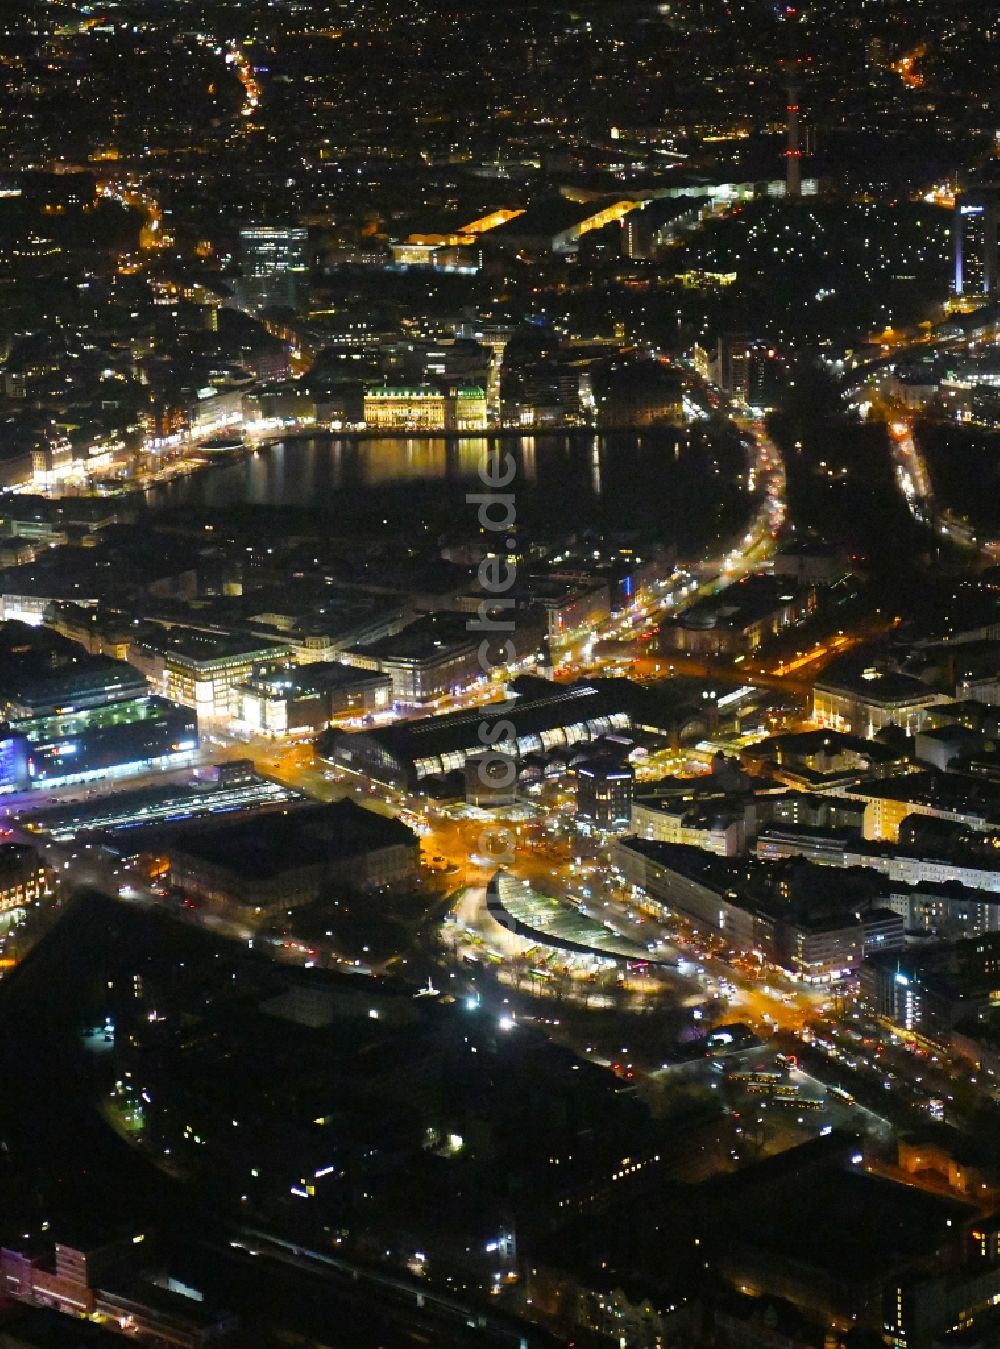 Nacht-Luftaufnahme Hamburg - Nachtluftbild Innenstadtbereich im Ortsteil Sankt Georg in Hamburg, Deutschland